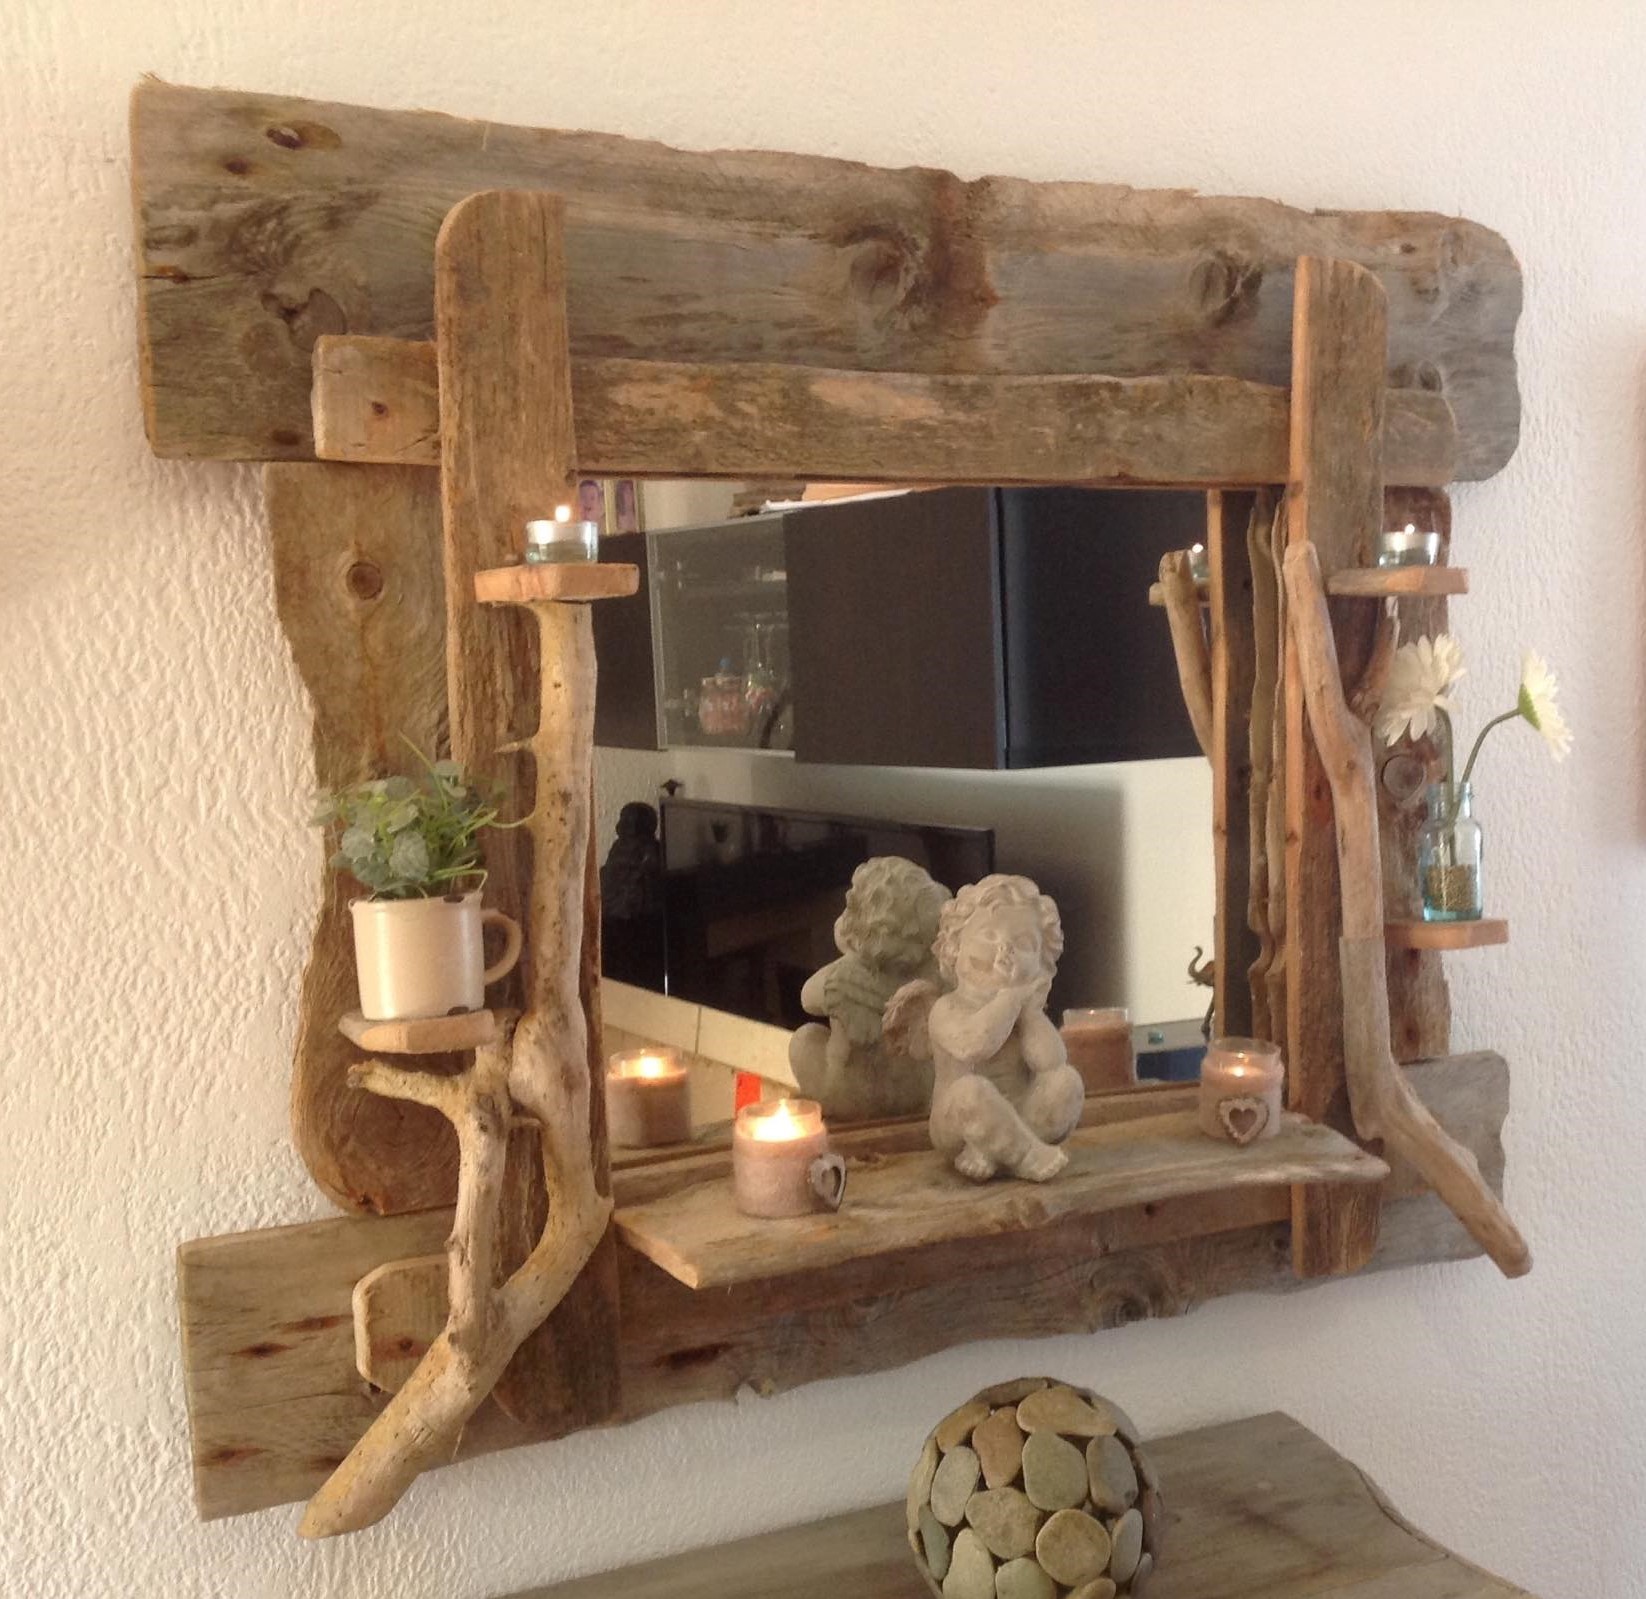 Miroir avec cadre en bois flotté